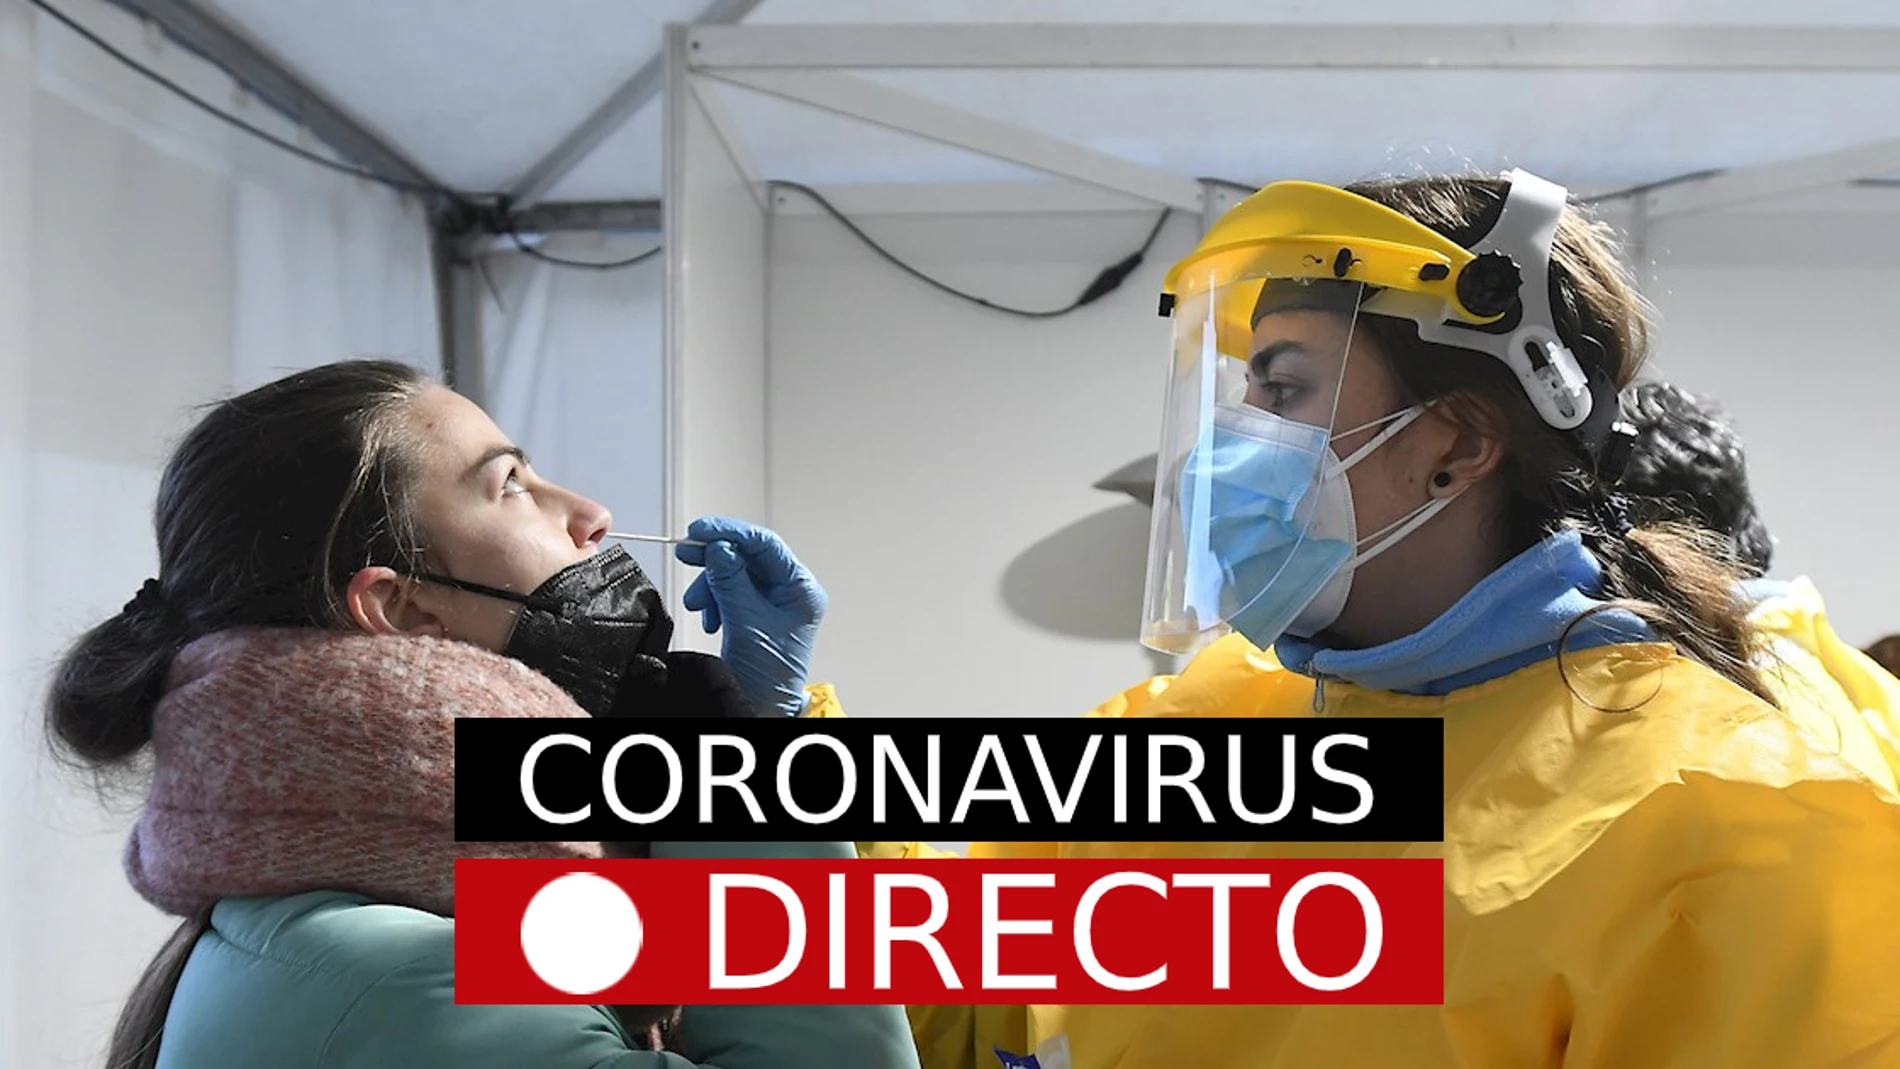 Última hora del coronavirus en directo: la incidencia acumulada sigue disparada por ómicron